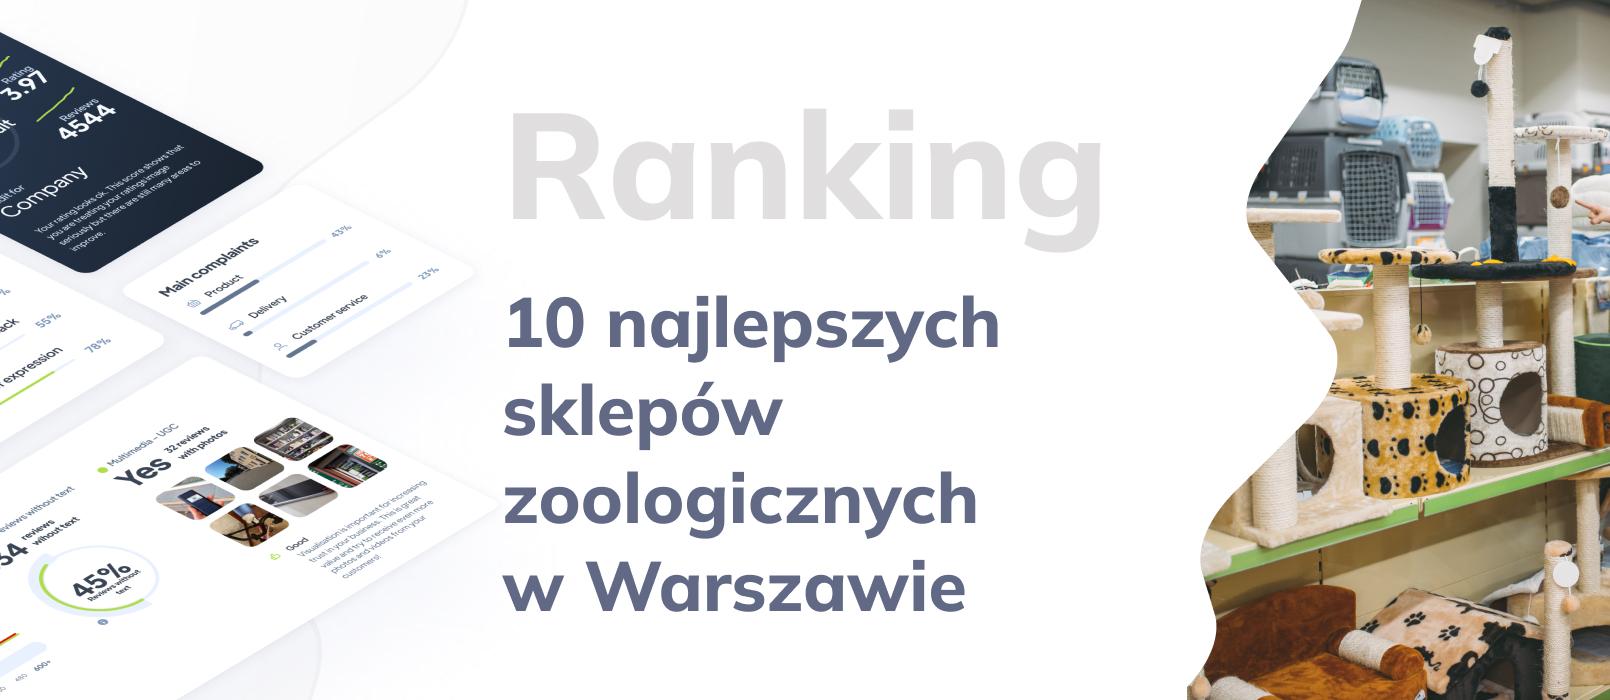 Najlepszy sklep zoologiczny Warszawa - ranking Top 10 